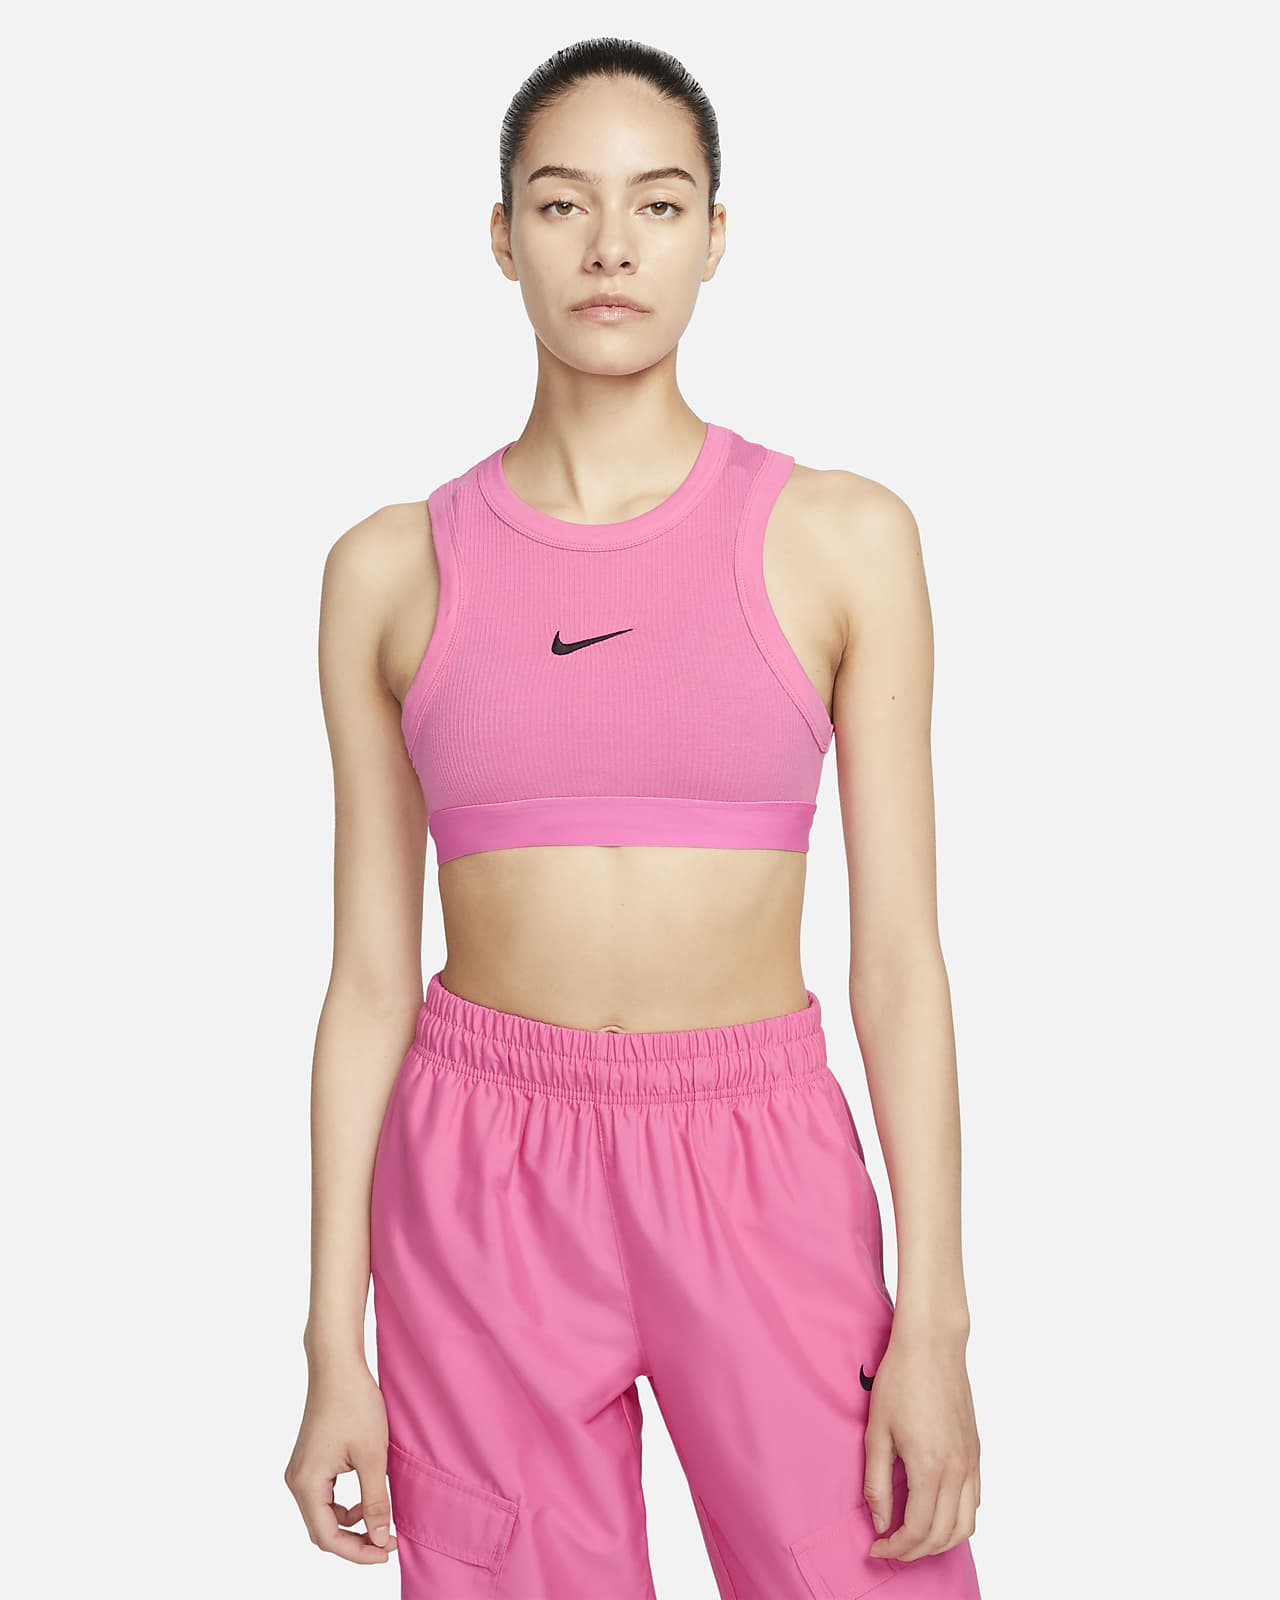 Nike Sportswear Women's Tank. Nike